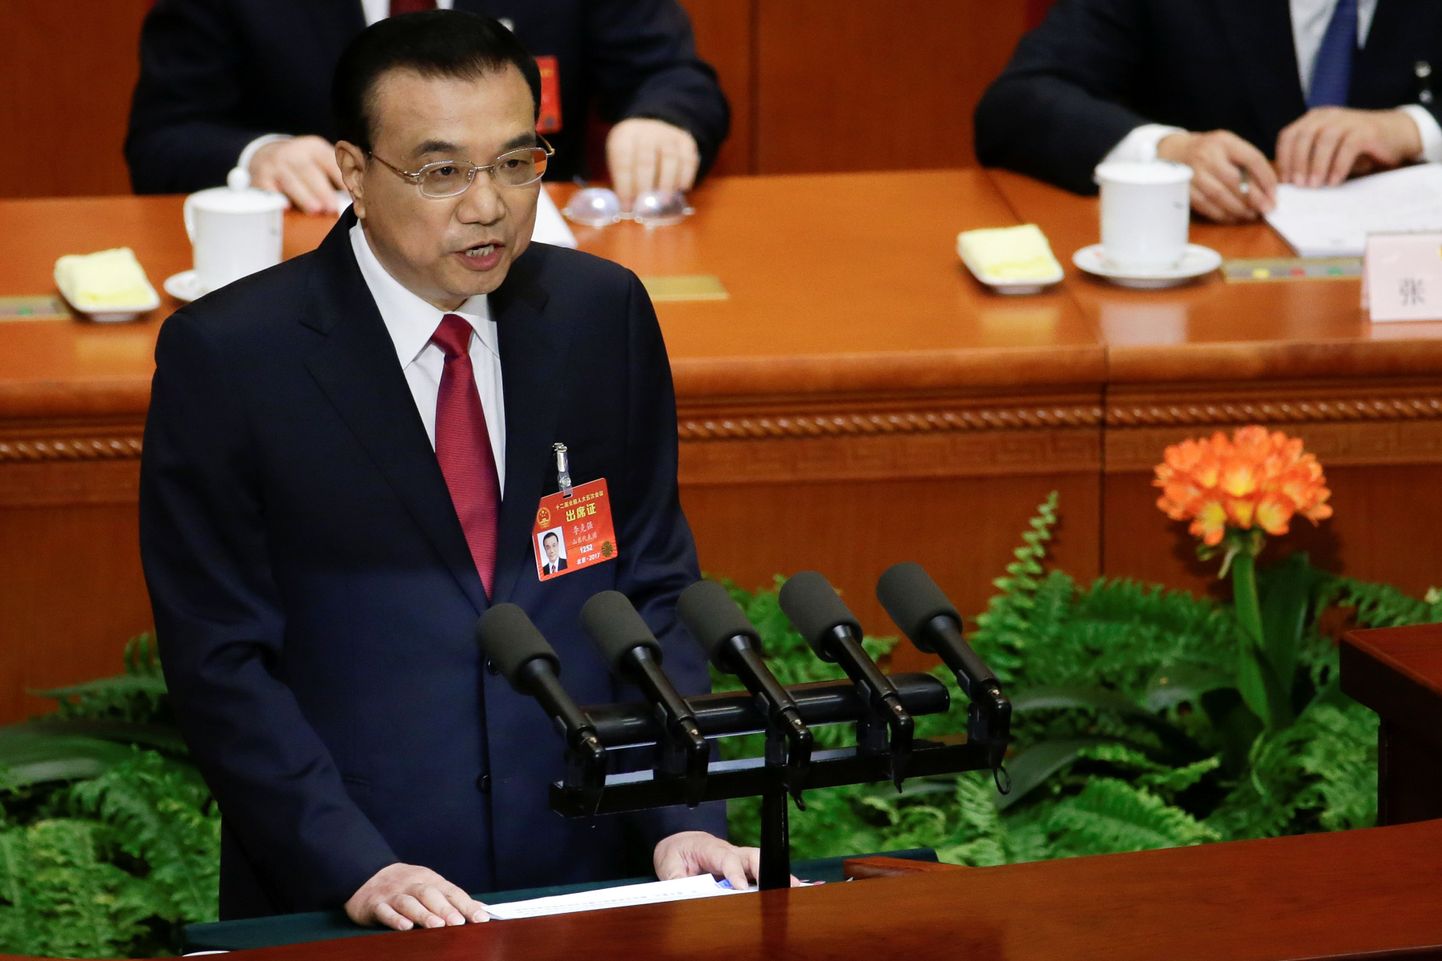 Hiina peaminister Li Keqiang valitsuse tegevusest parlamendile aru andmas.